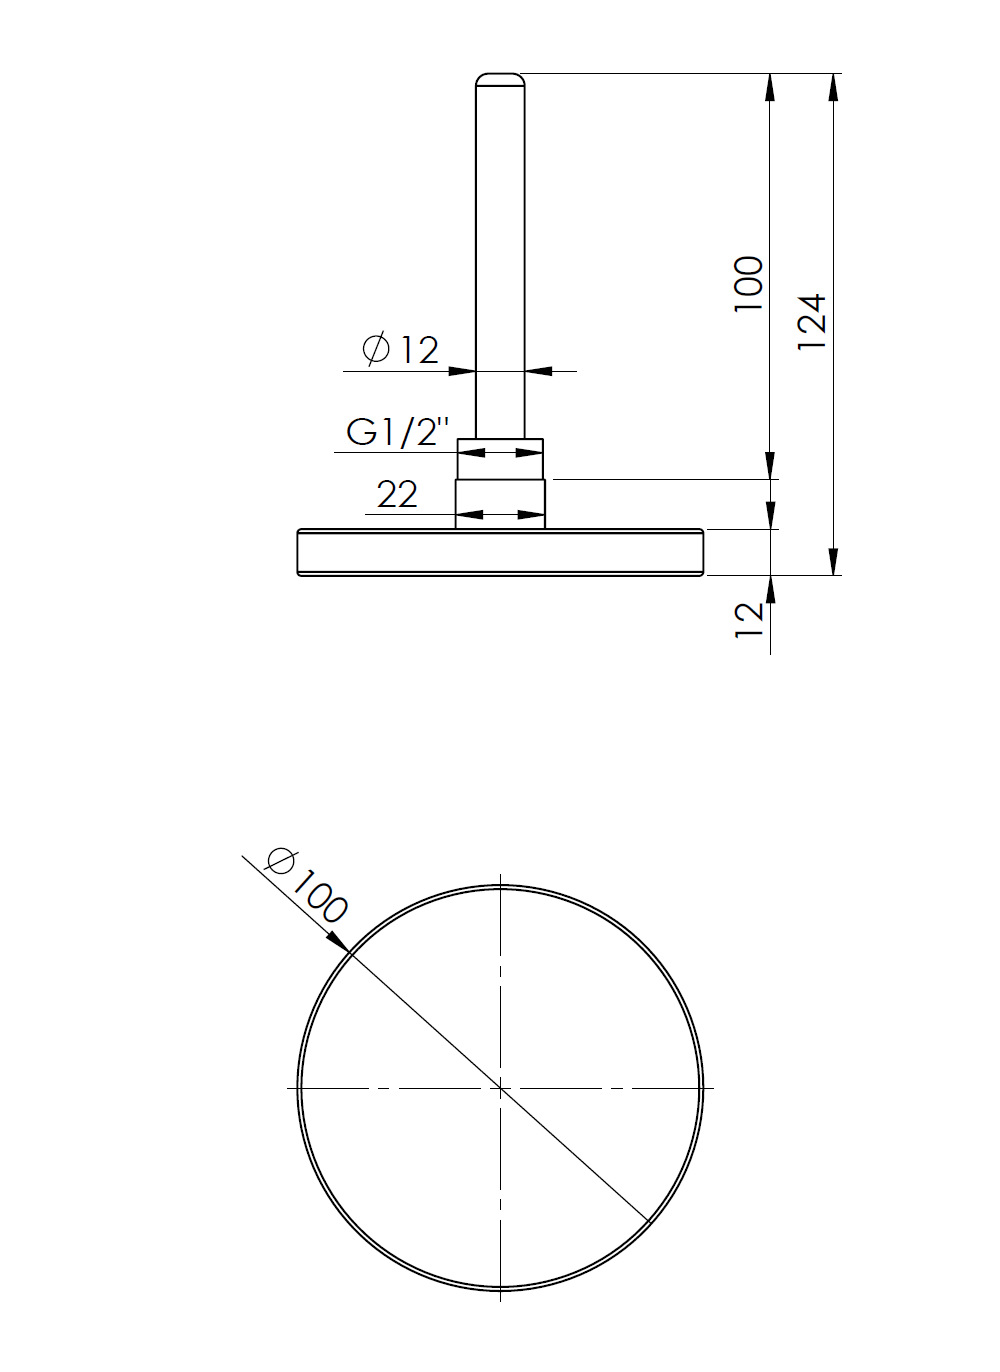 63813 Termometr bimetaliczny BiTh 100, fi100 mm, 0÷120°C, L 100 mm, G1/2", ax, kl. 2 - wymiary AFRISO 1